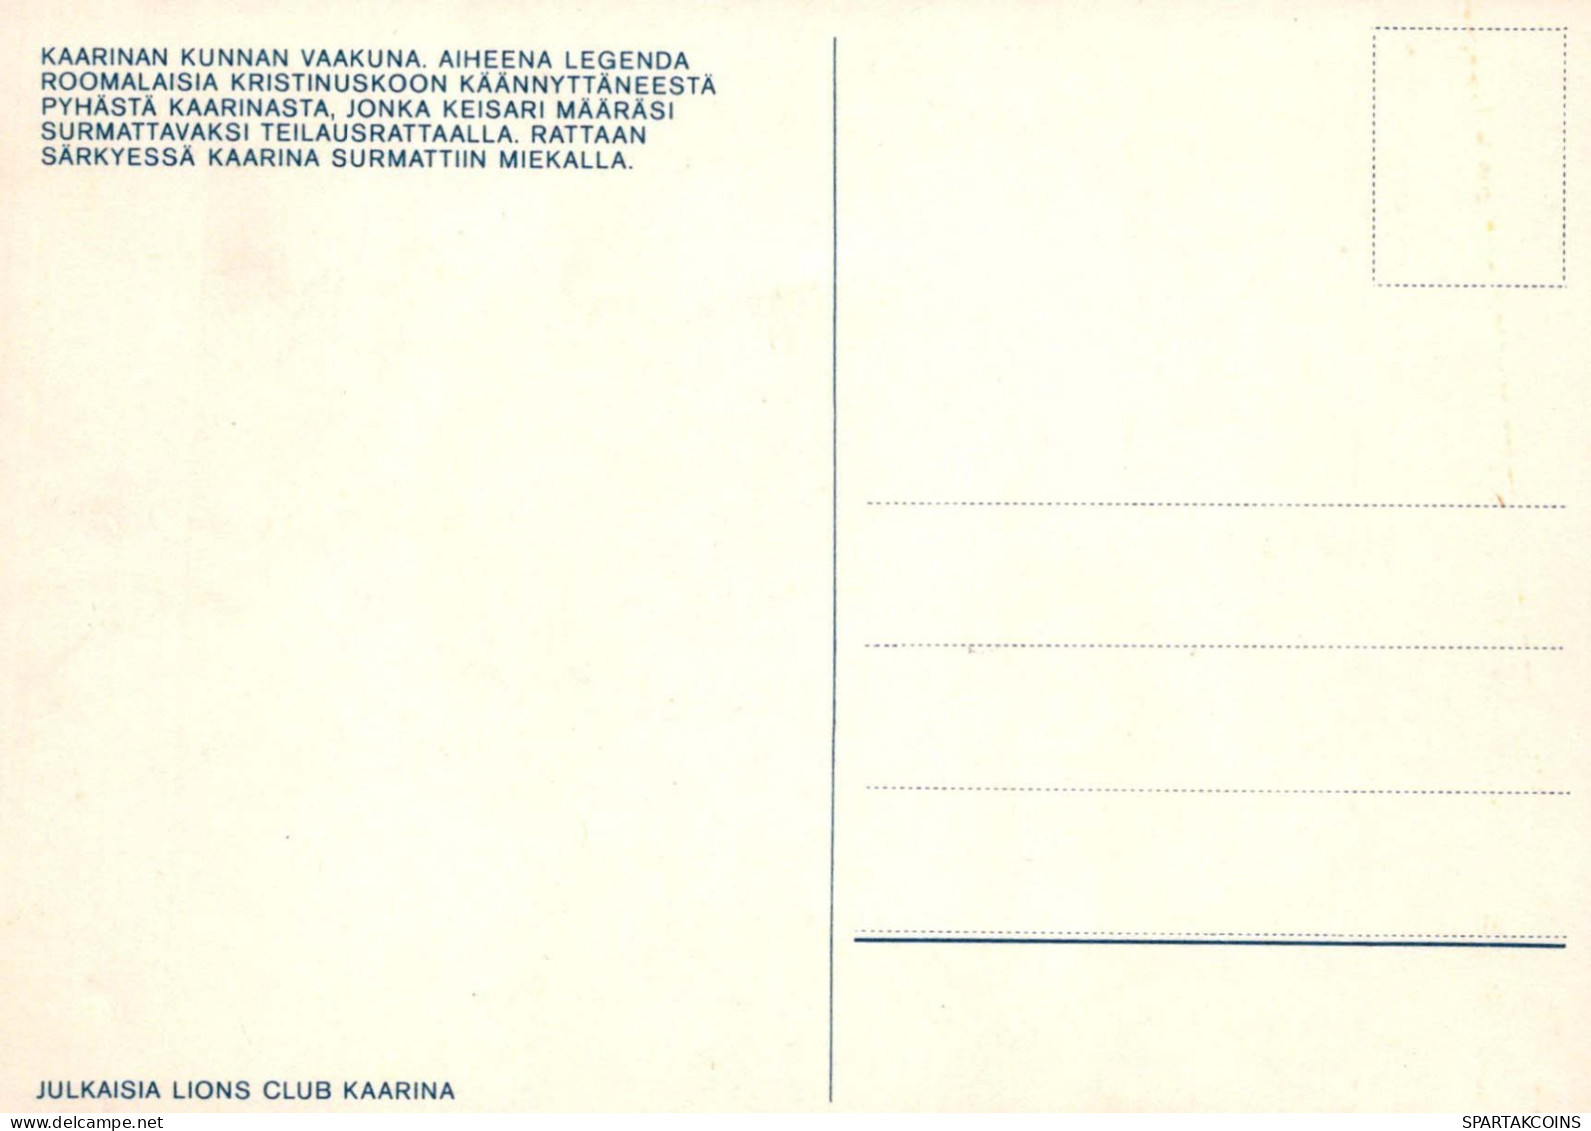 HOLY CARINA FINLANDIA KAARINA COAT OF ARMS HOLY CARINA Vintage Cartolina CPSM #PBQ250.A - Santos